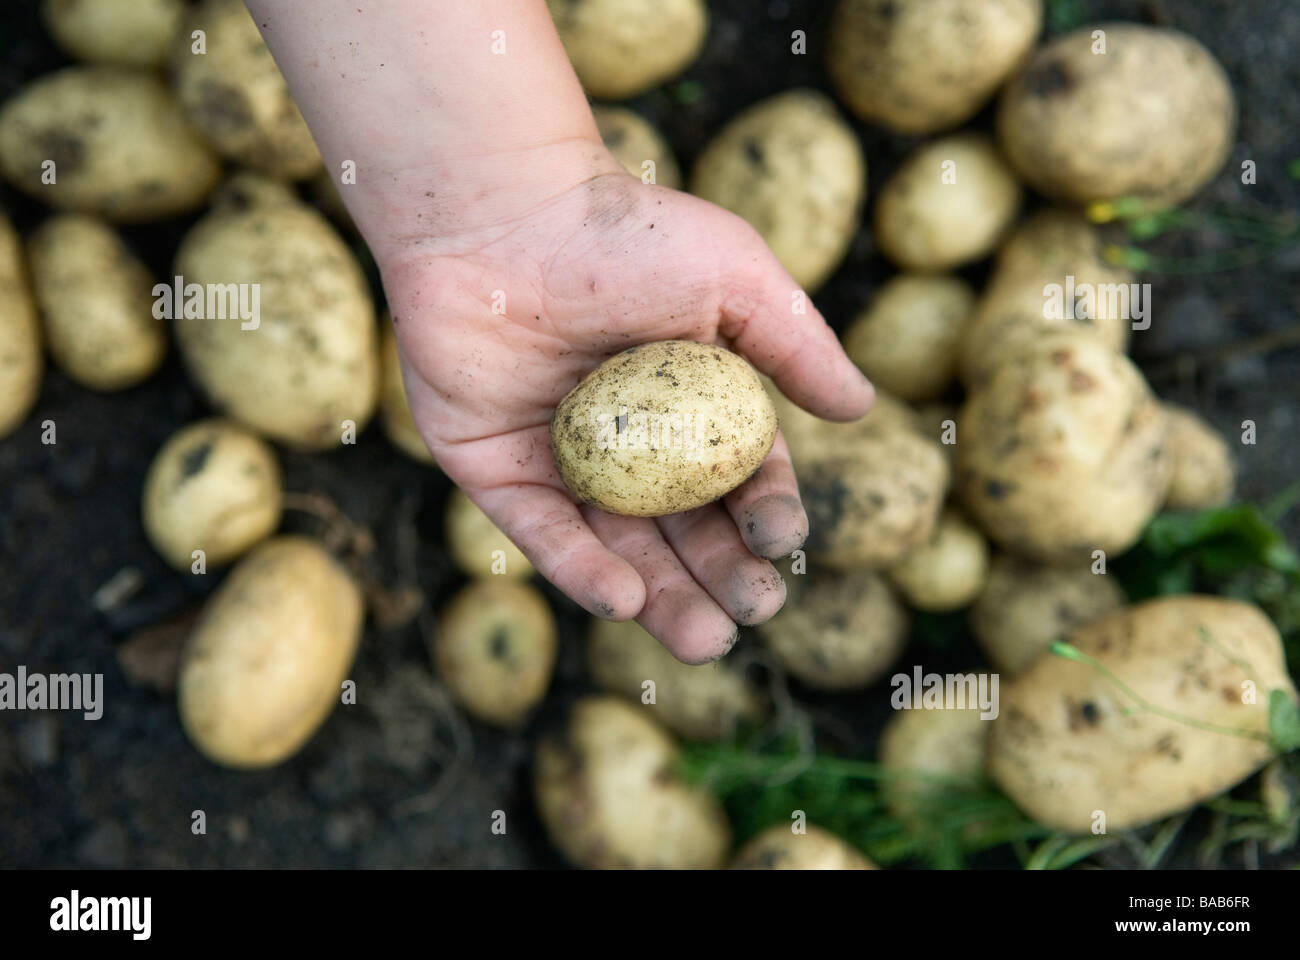 Raccolta a mano delle patate in Svezia. Foto Stock